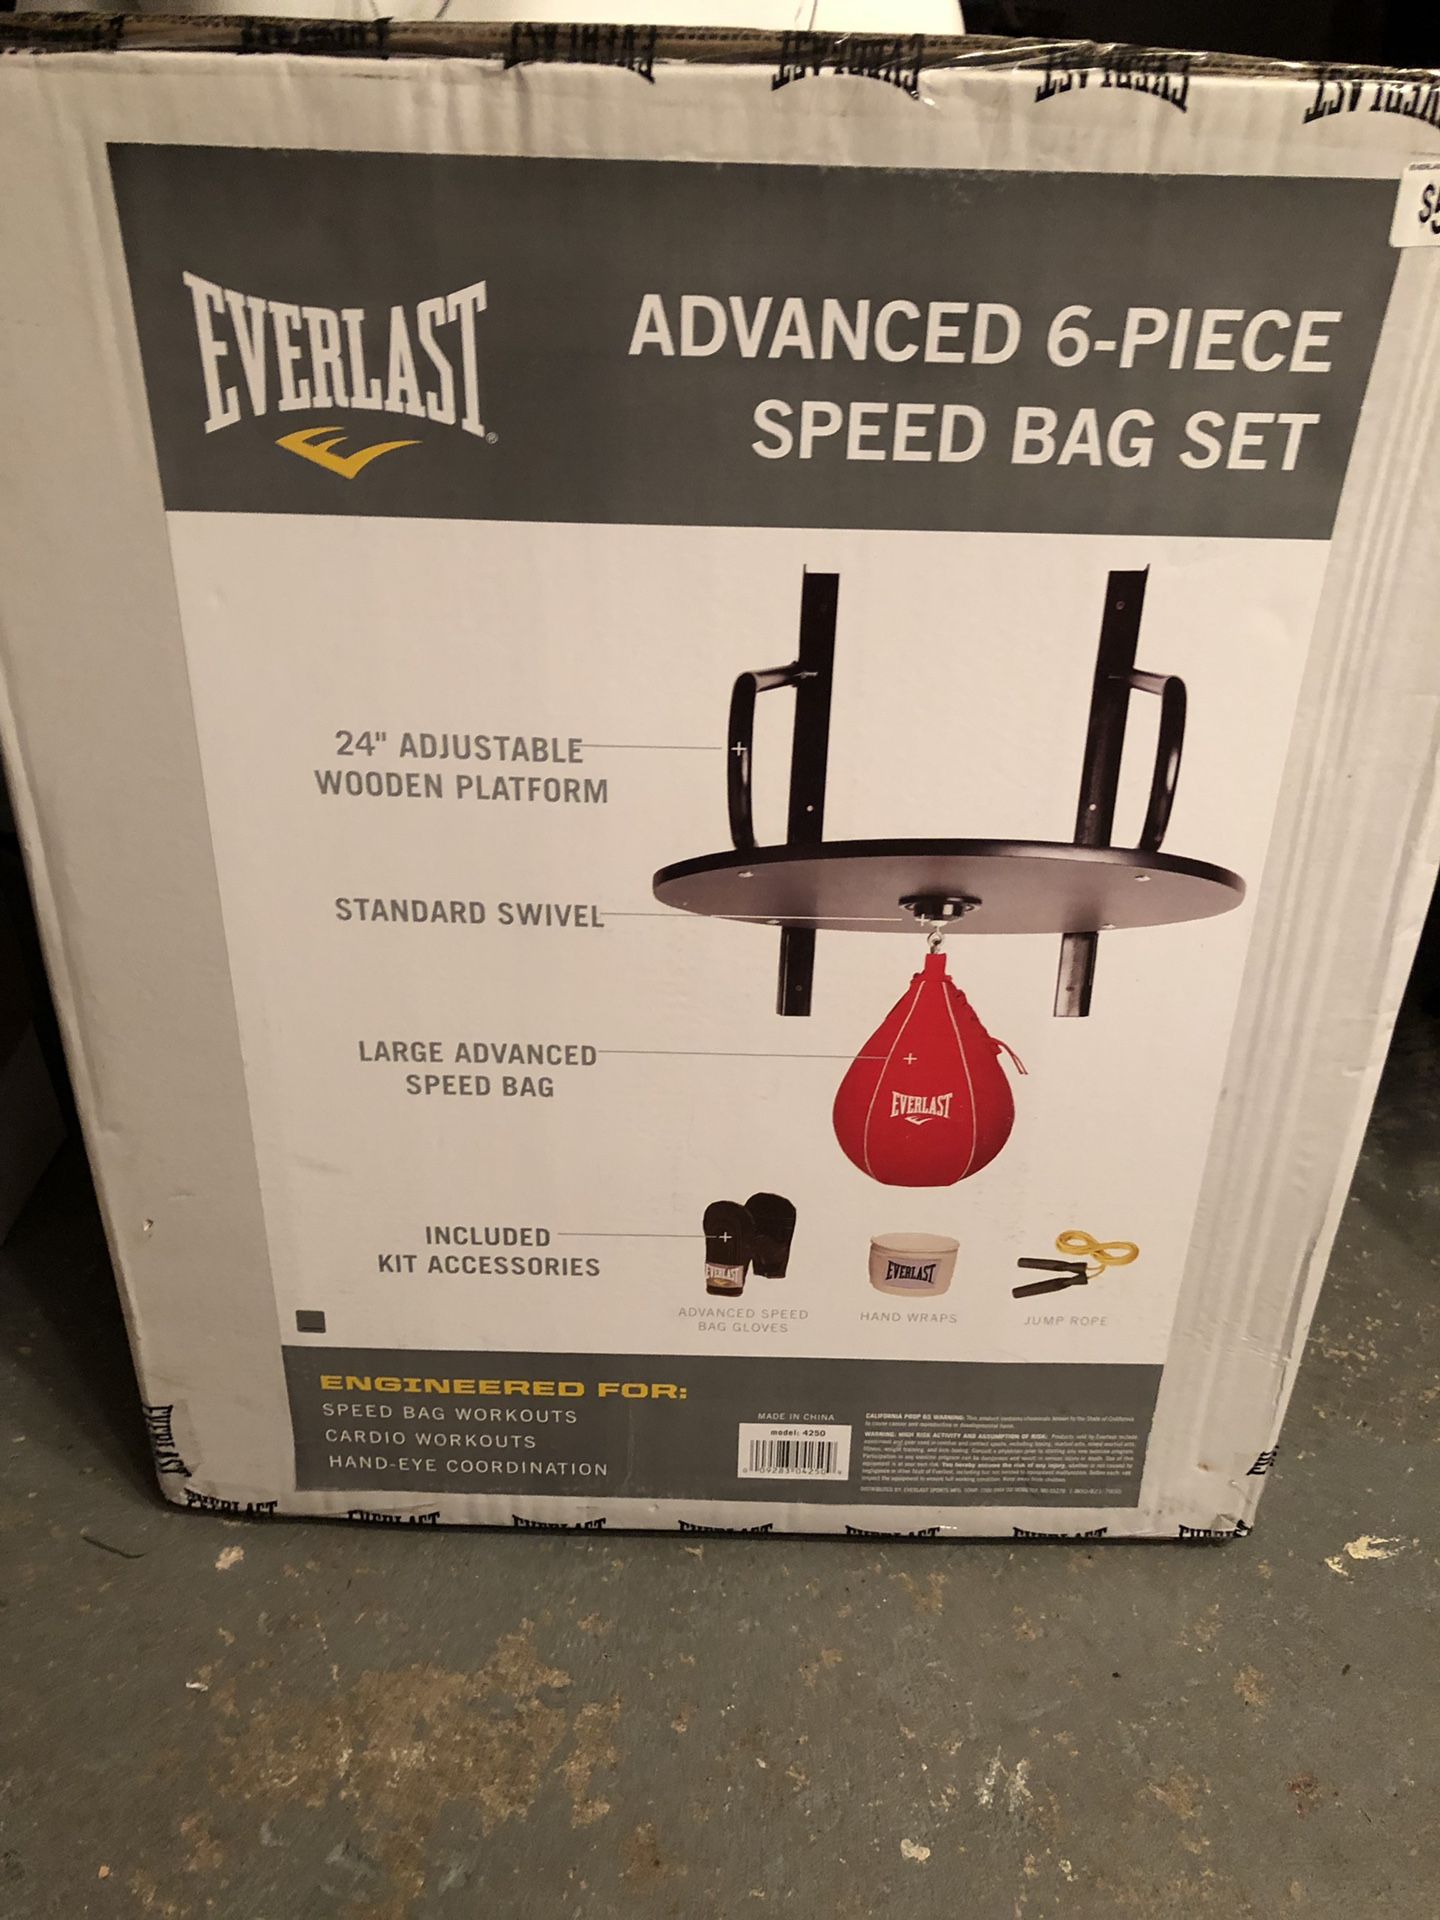 Everlast advances speed bag set